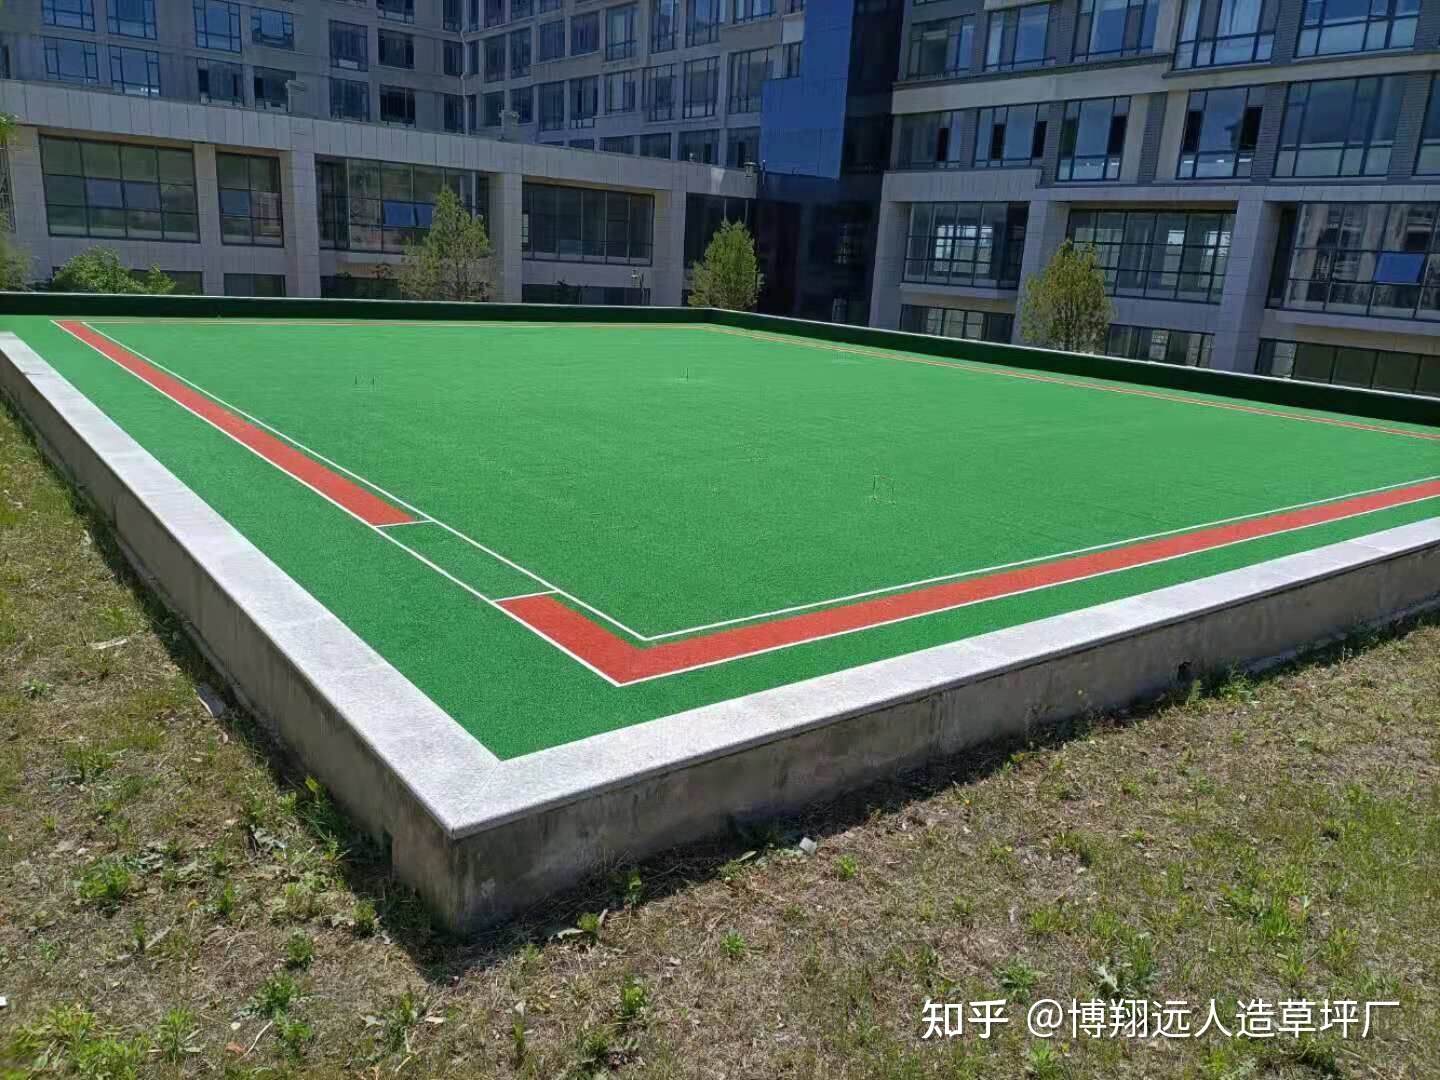 
网球场标准网球场地的占地面积不小于648平方米(图)